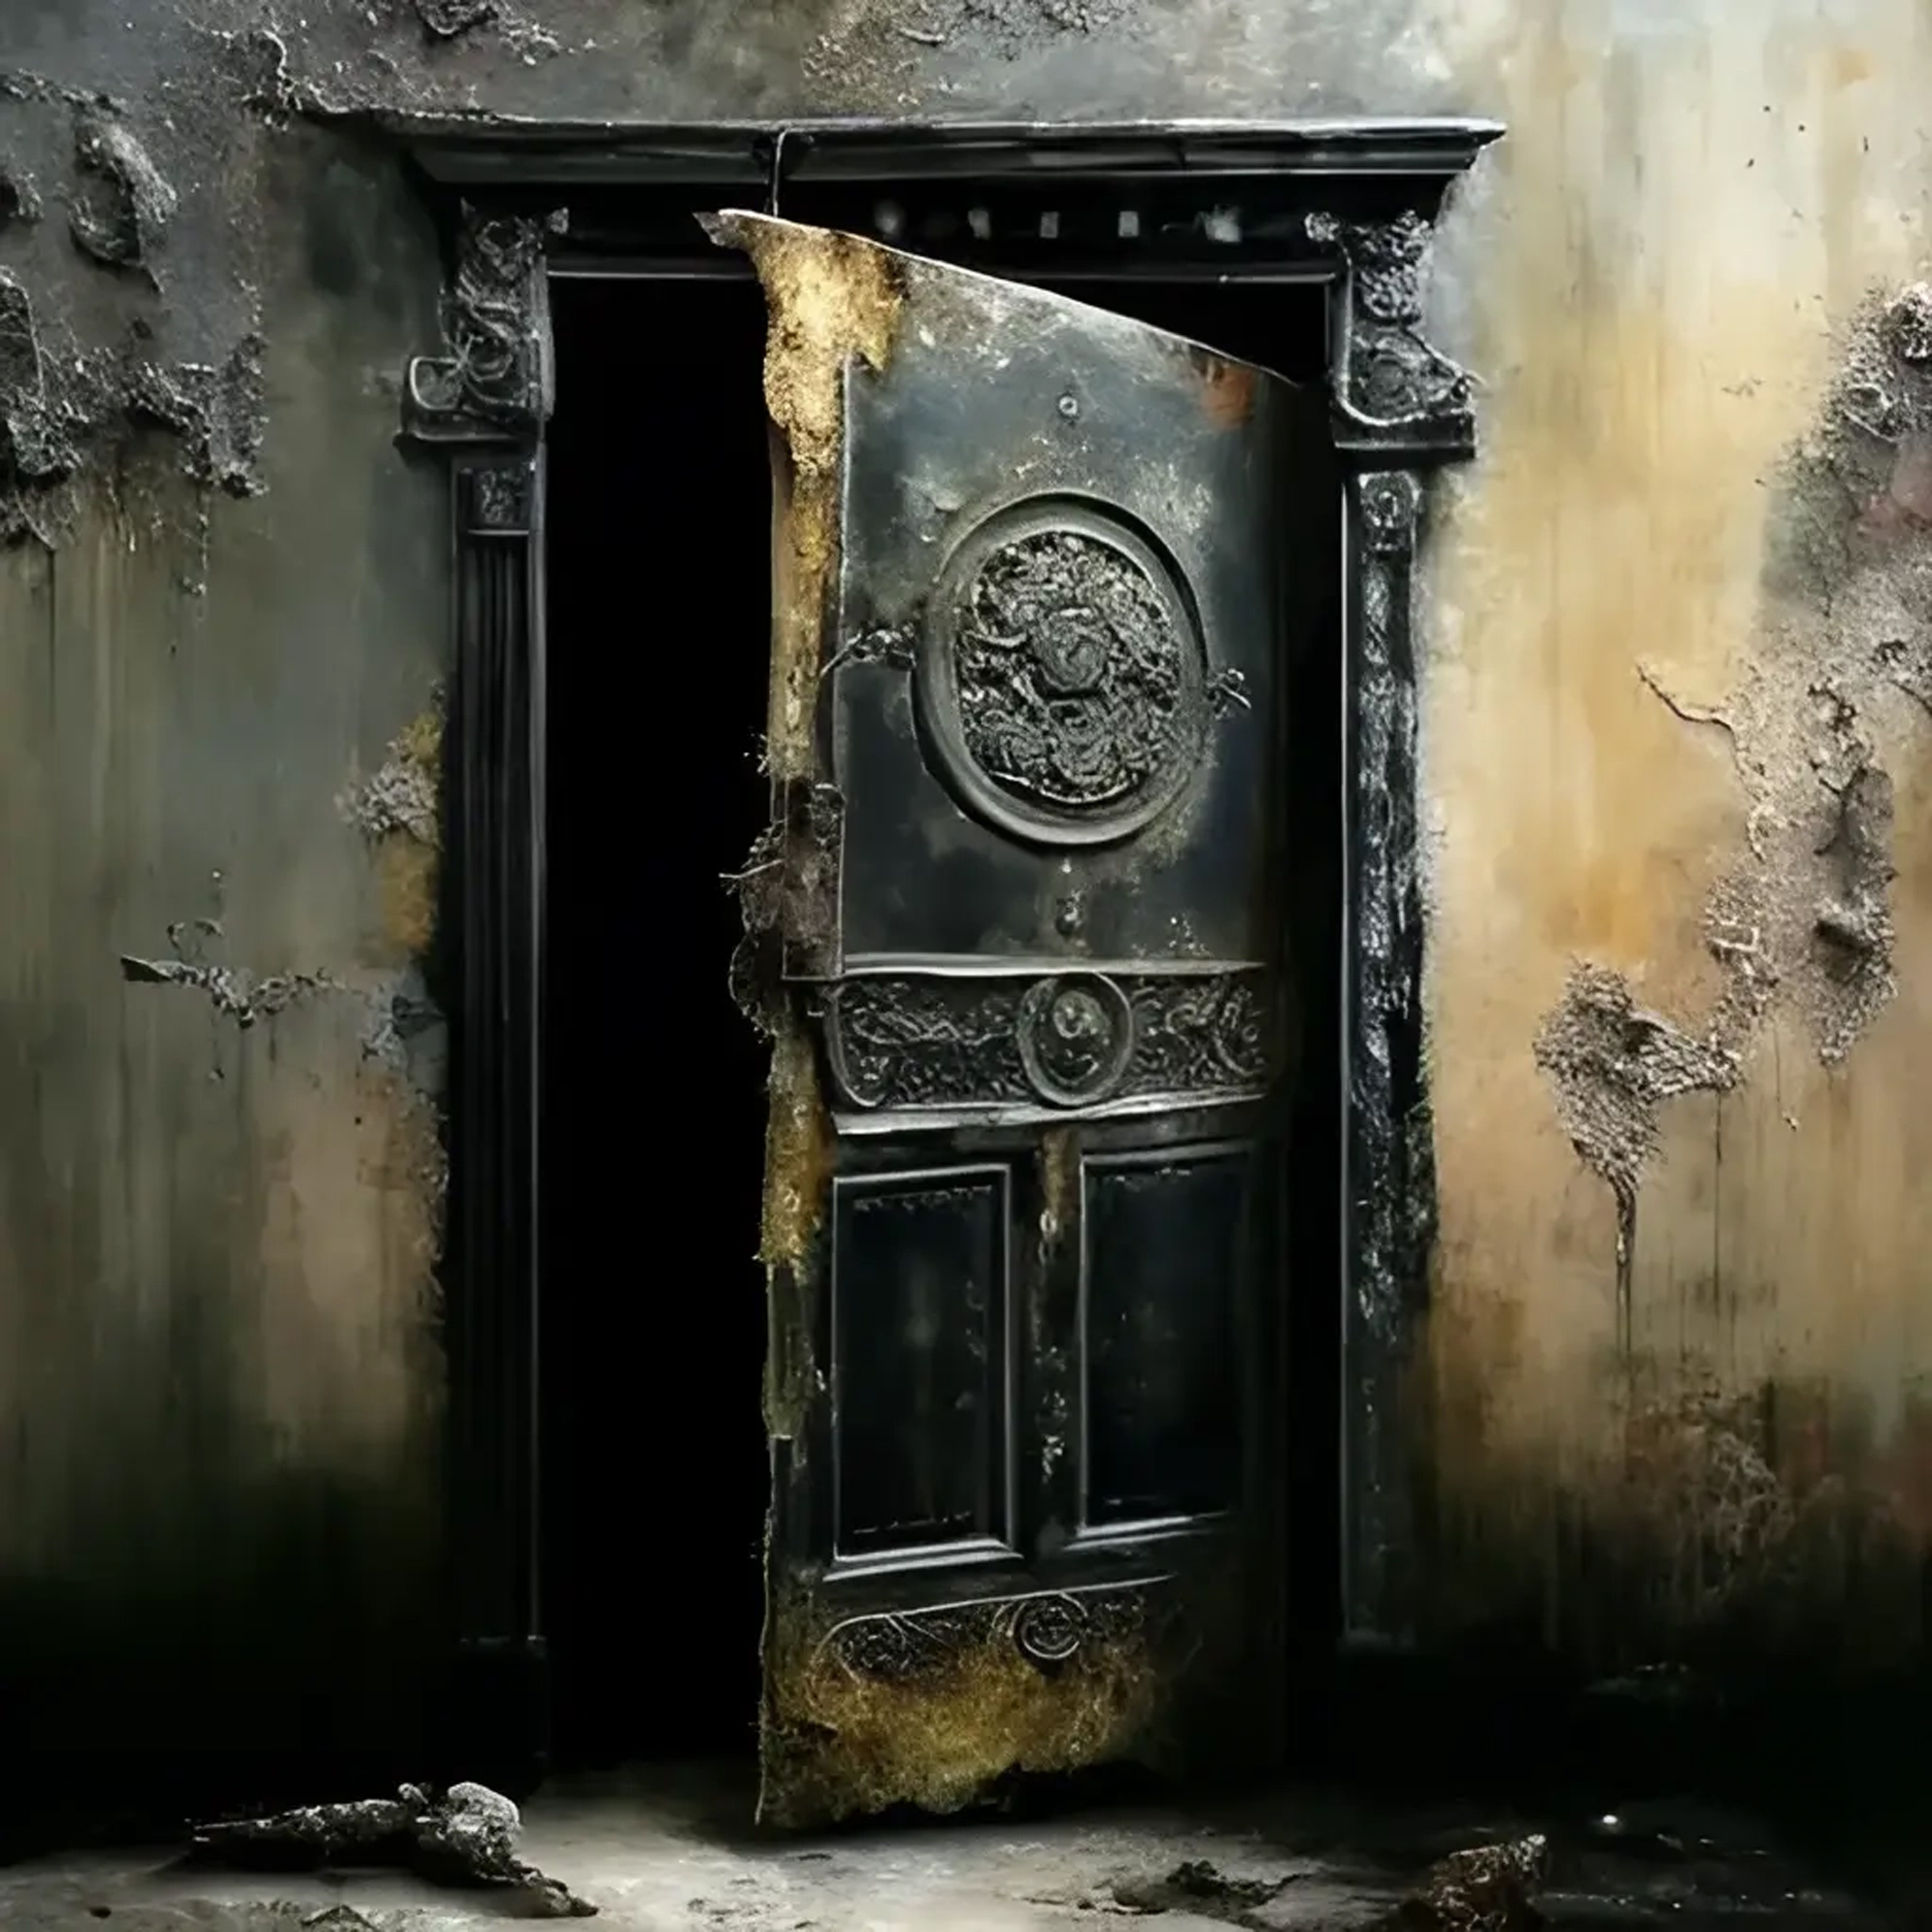 II - The door of XNLKX